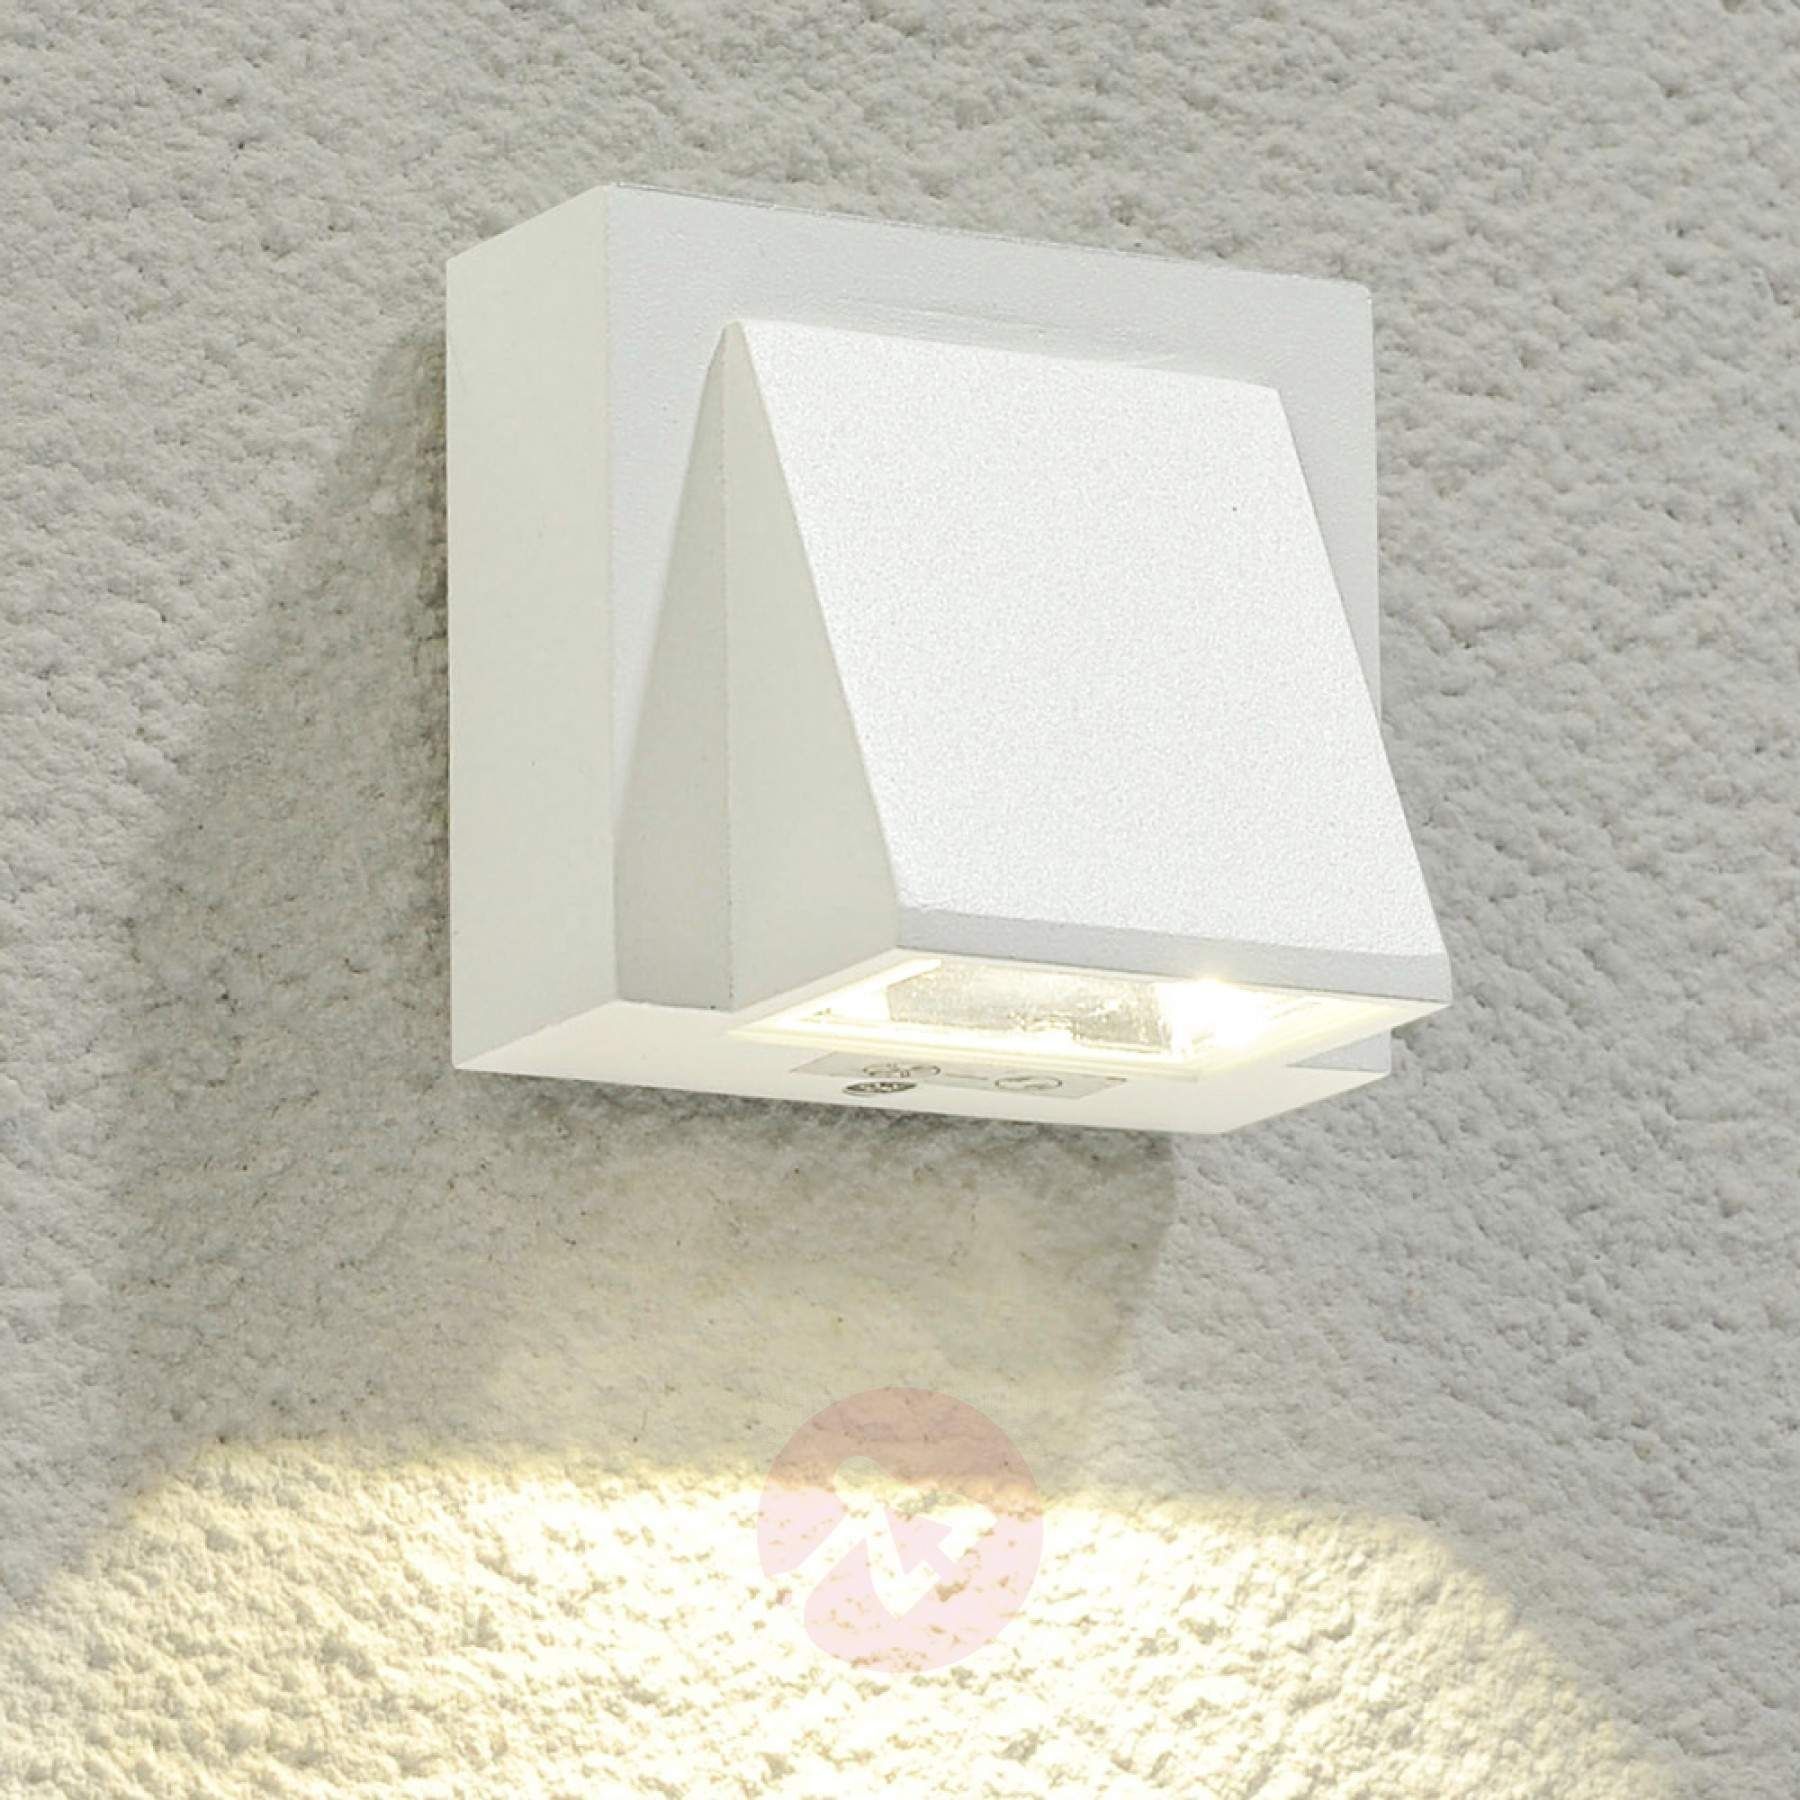 Marik White Led Outdoor Wall Light 9616070 Buy | Lighting Within White Led Outdoor Wall Lights (Photo 1 of 15)